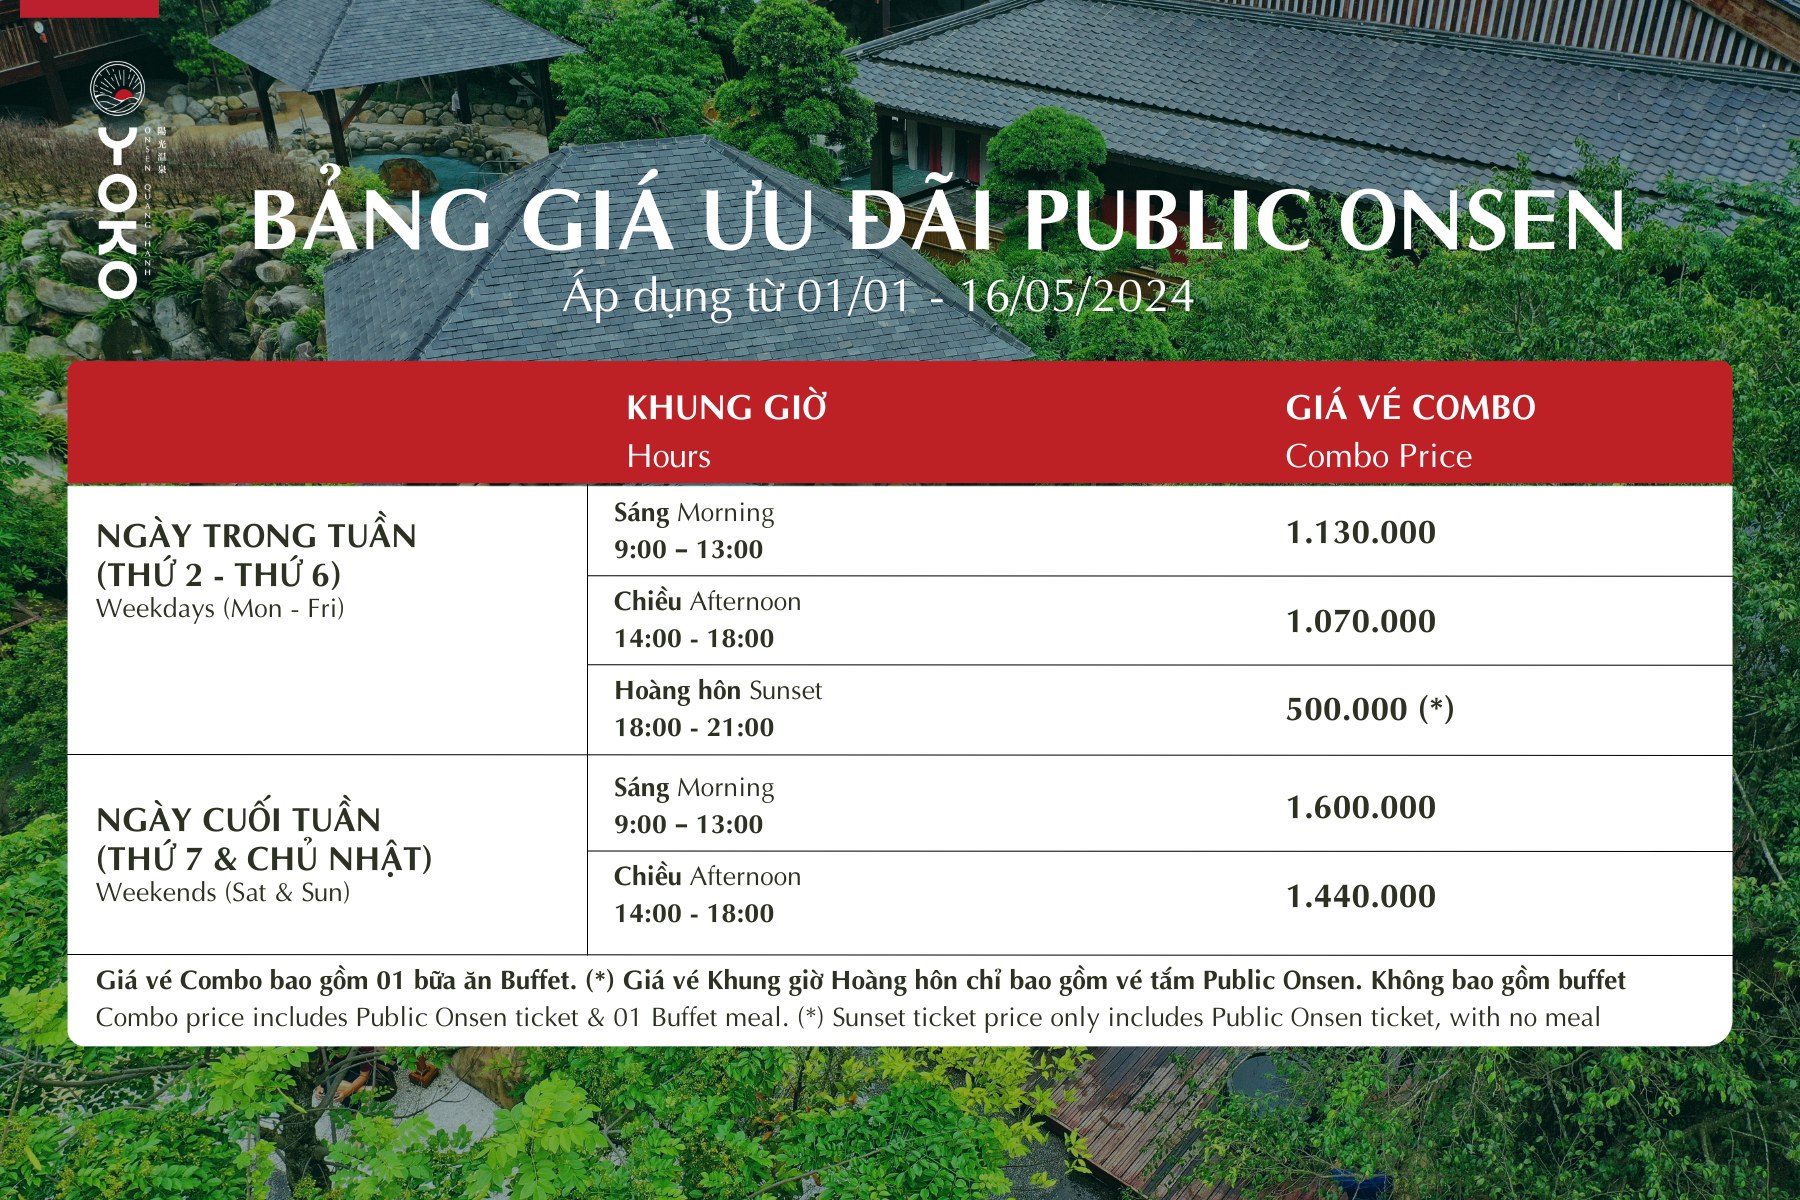 Giá vé tắm Onsen Quang Hanh năm 2024